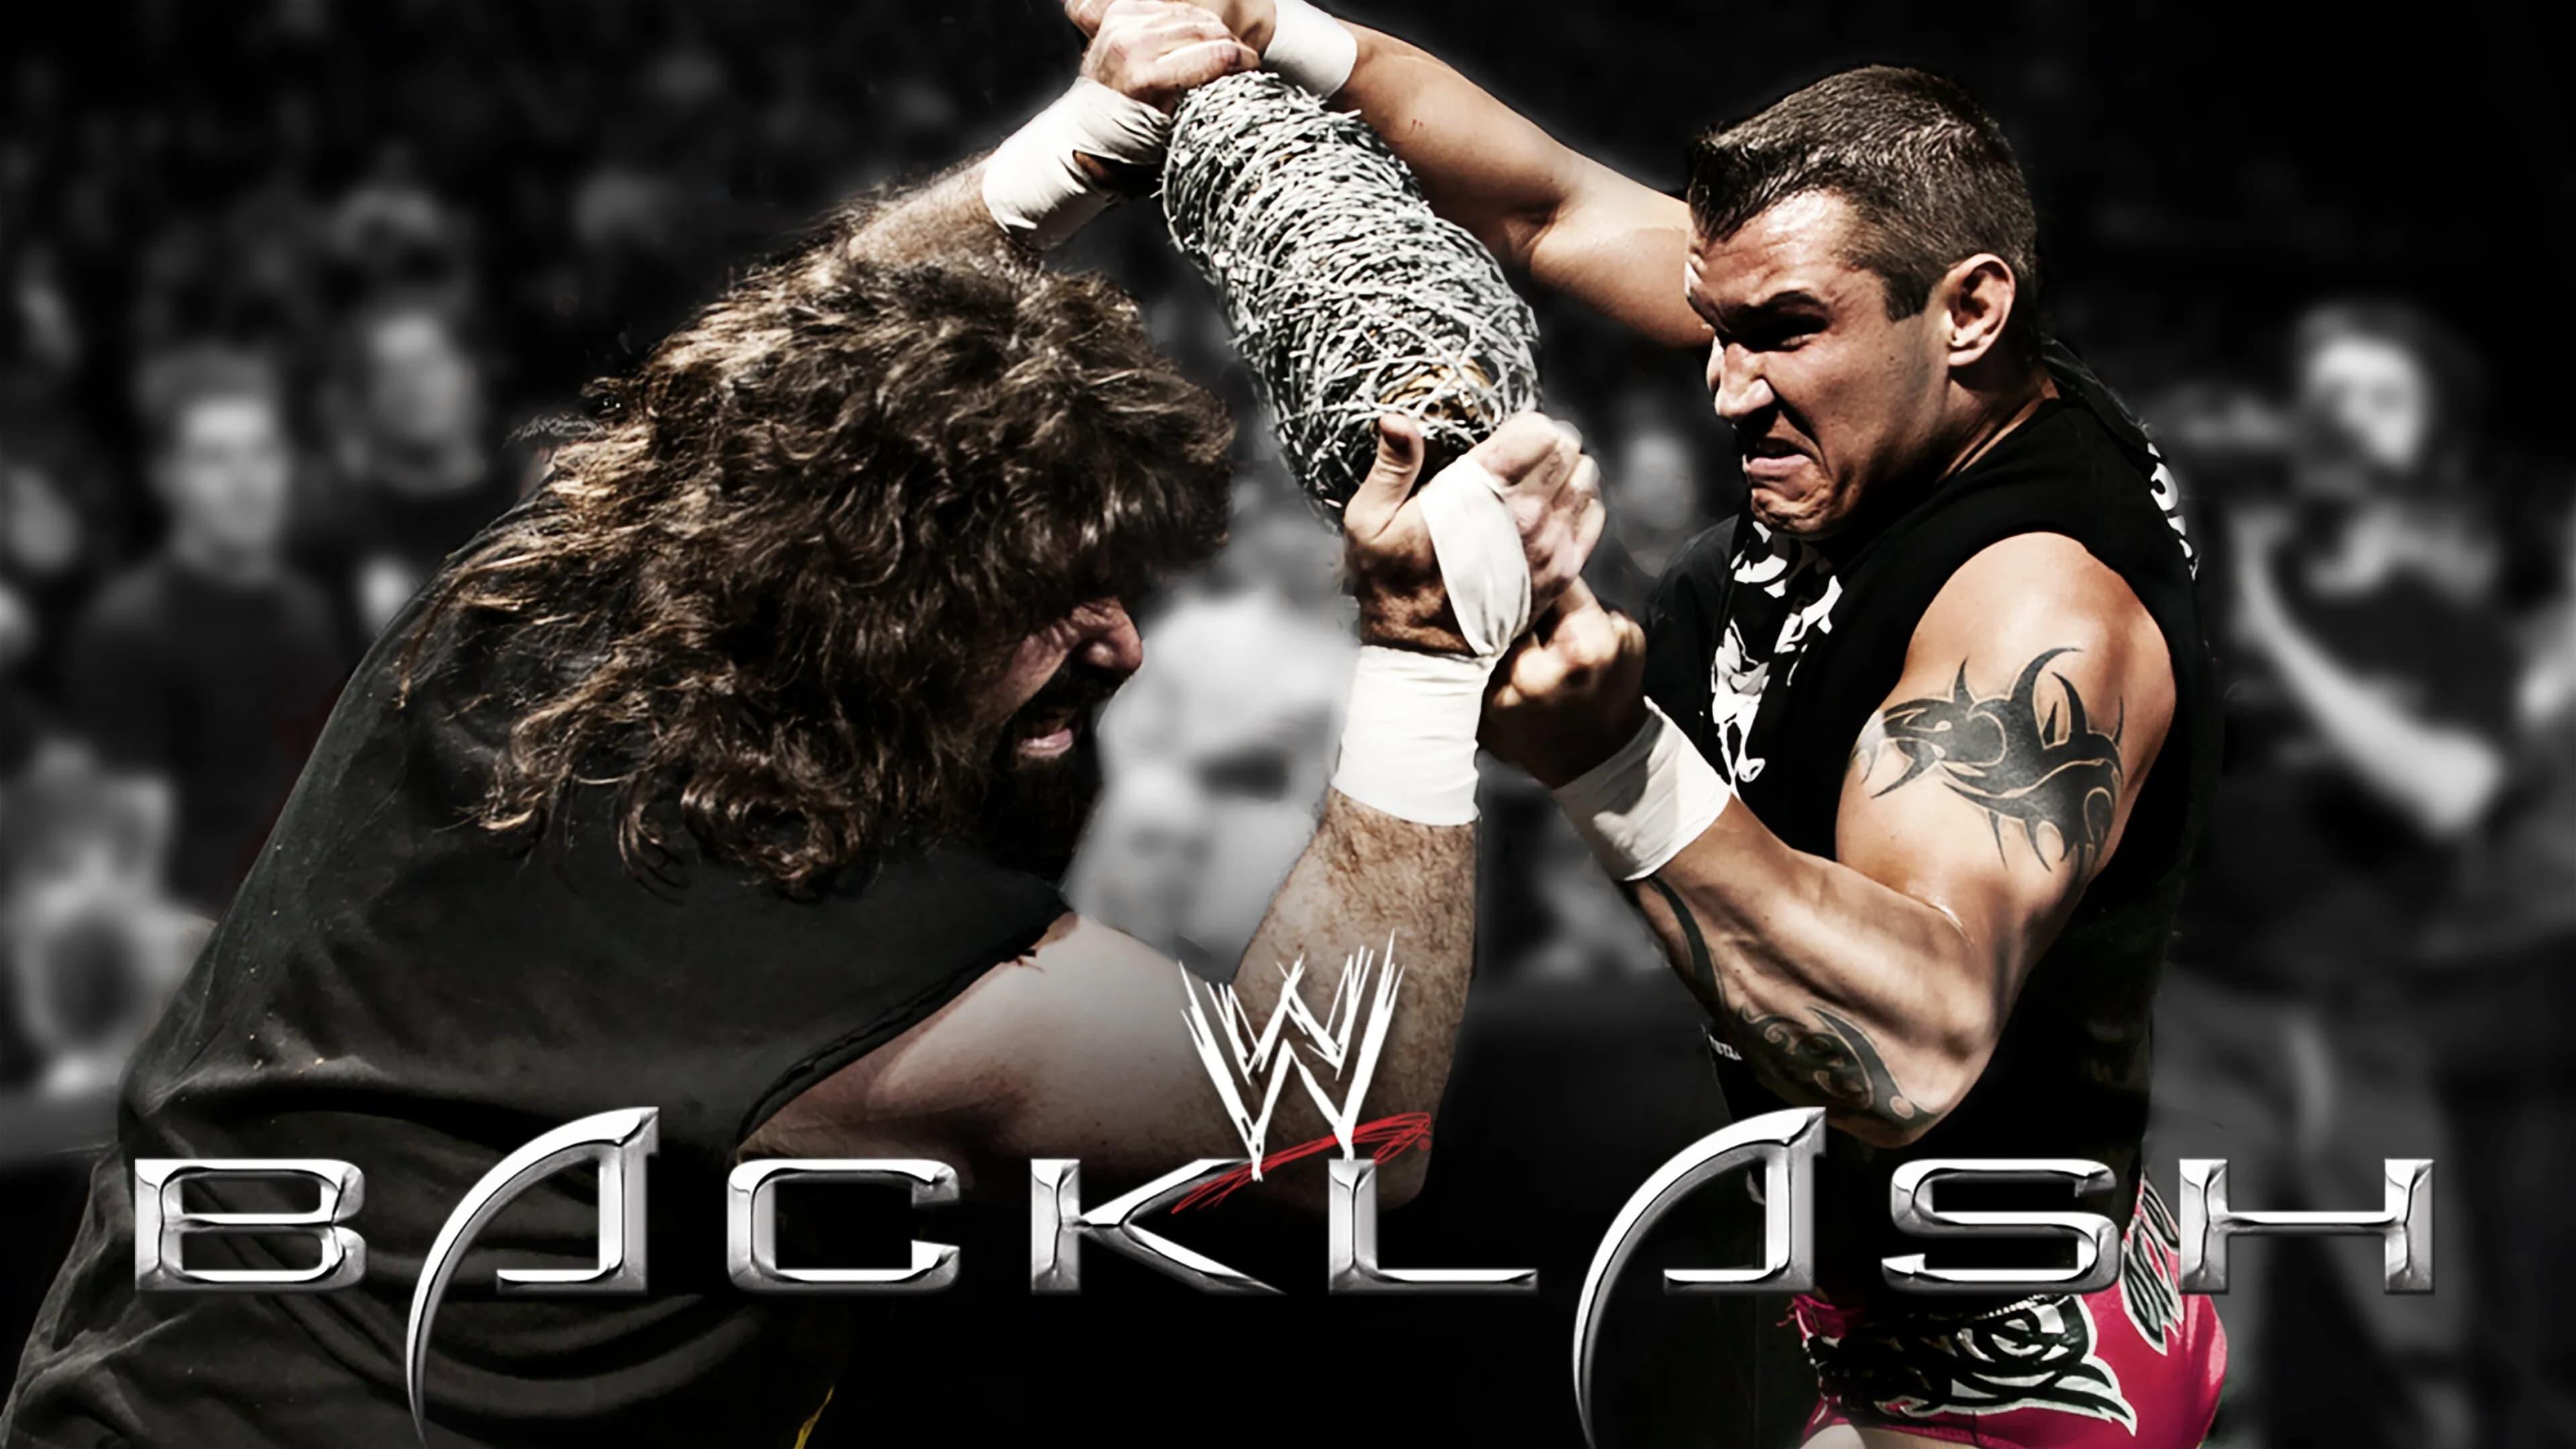 WWE Backlash 2004 backdrop